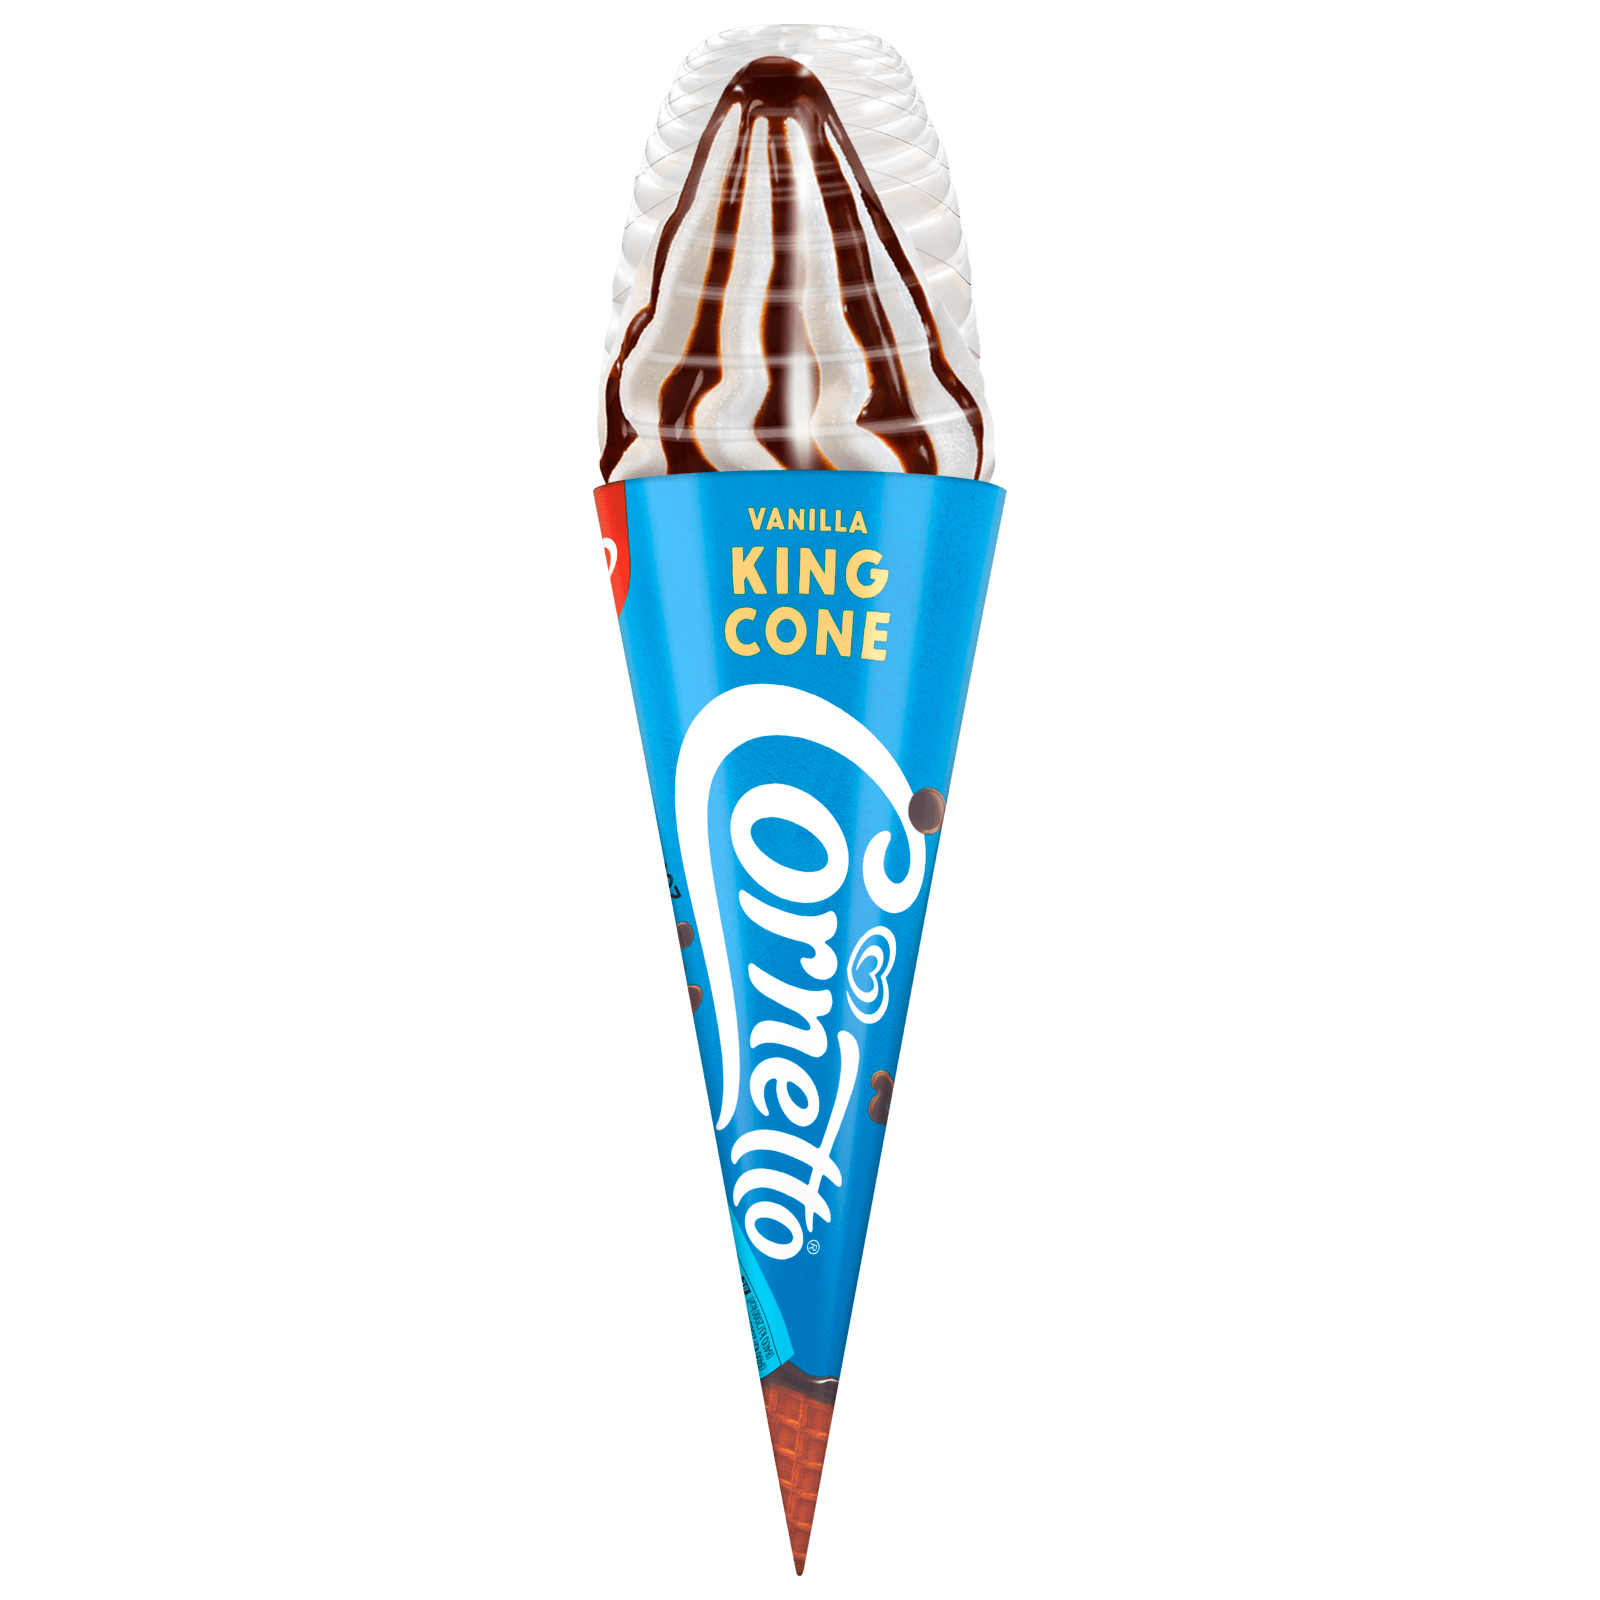 Cornetto King Cone Vanilla Eis 260ml bei REWE online bestellen!